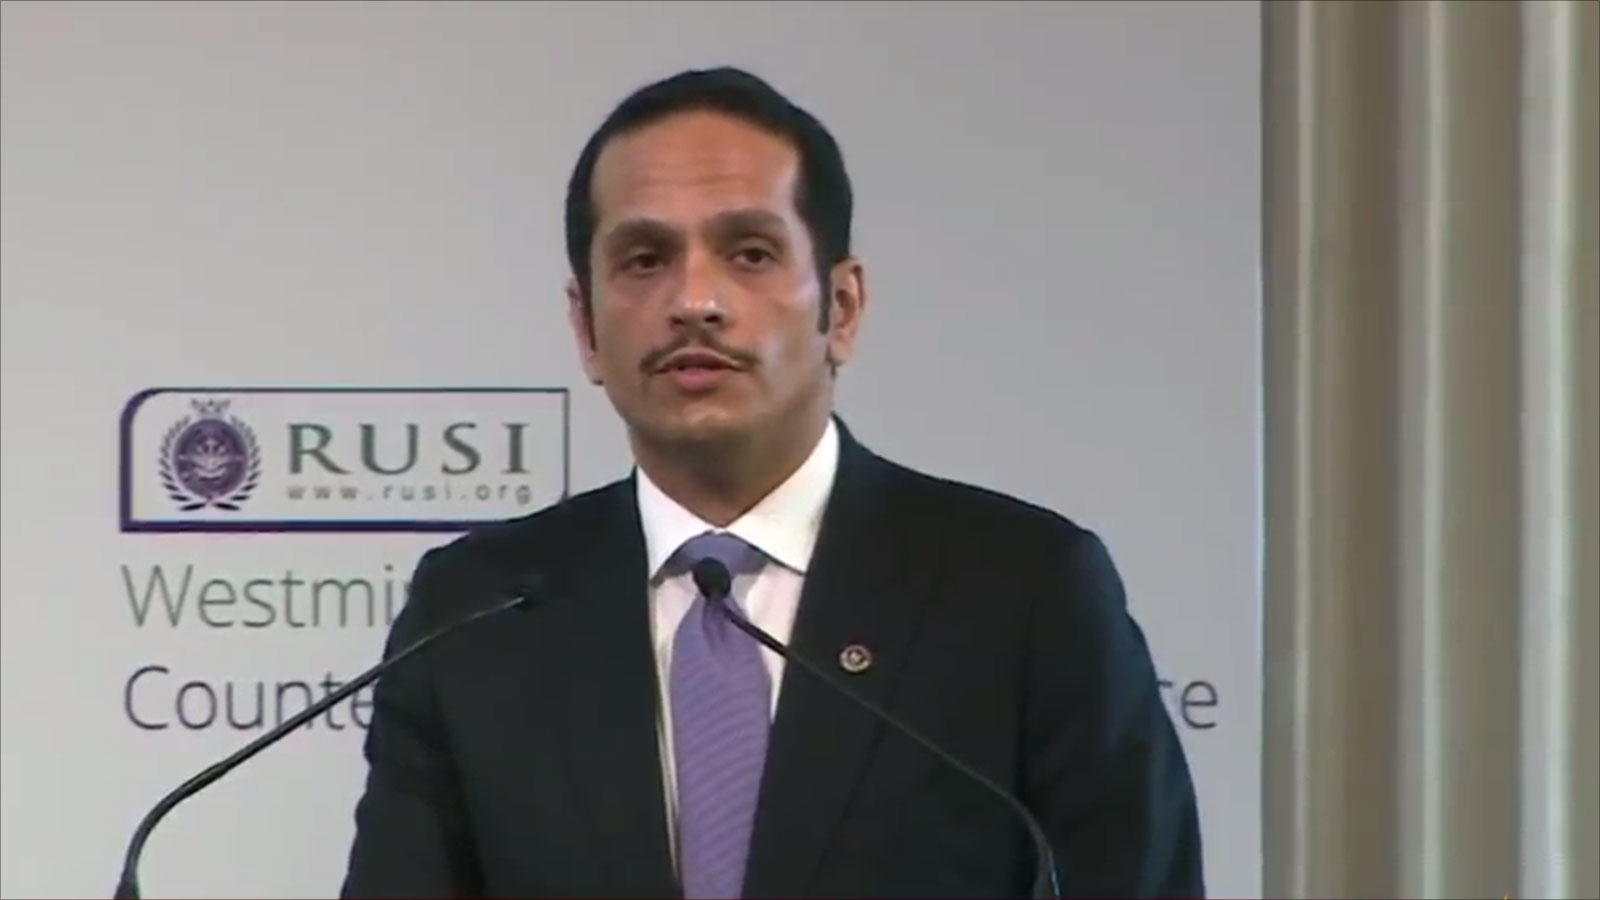 ‪الوزير محمد بن عبد الرحمن آل ثاني استعرض في المؤتمر جهود بلاده لمكافحة الإرهاب ووقف تمويله‬ (الجزيرة)